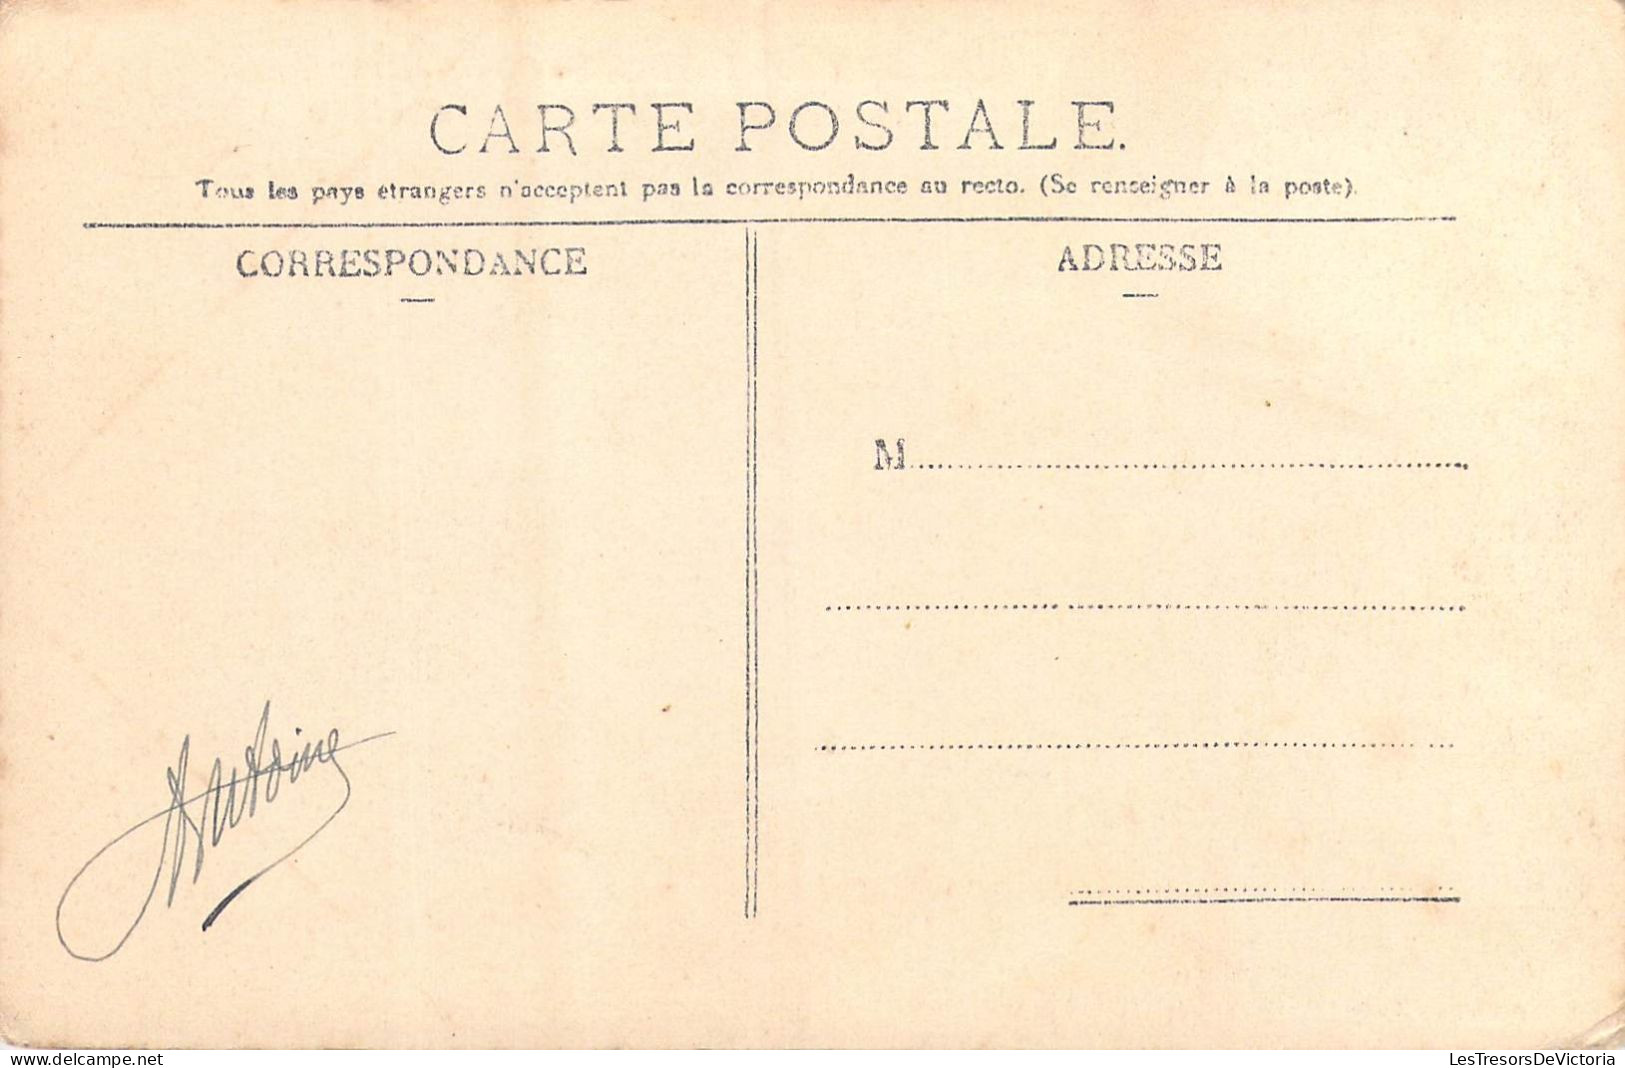 FRANCE - 63 - Issoire - Boulevard De La Sous-Préfecture - Carte Postale Ancienne - Issoire